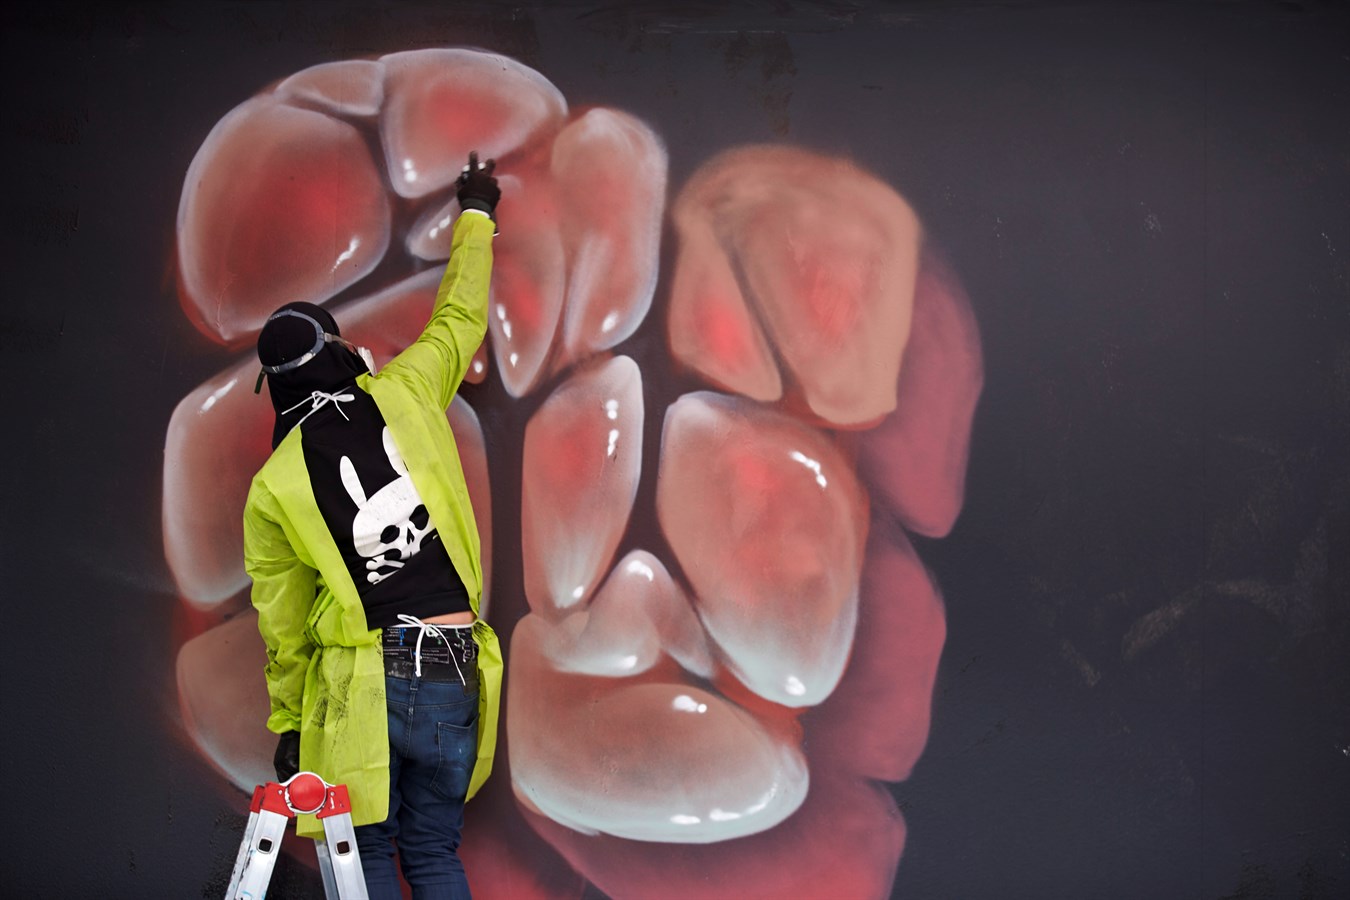 Der Wiener Street Art Künstler Nychos bei der Volvo Art Session 2014 in Zürich